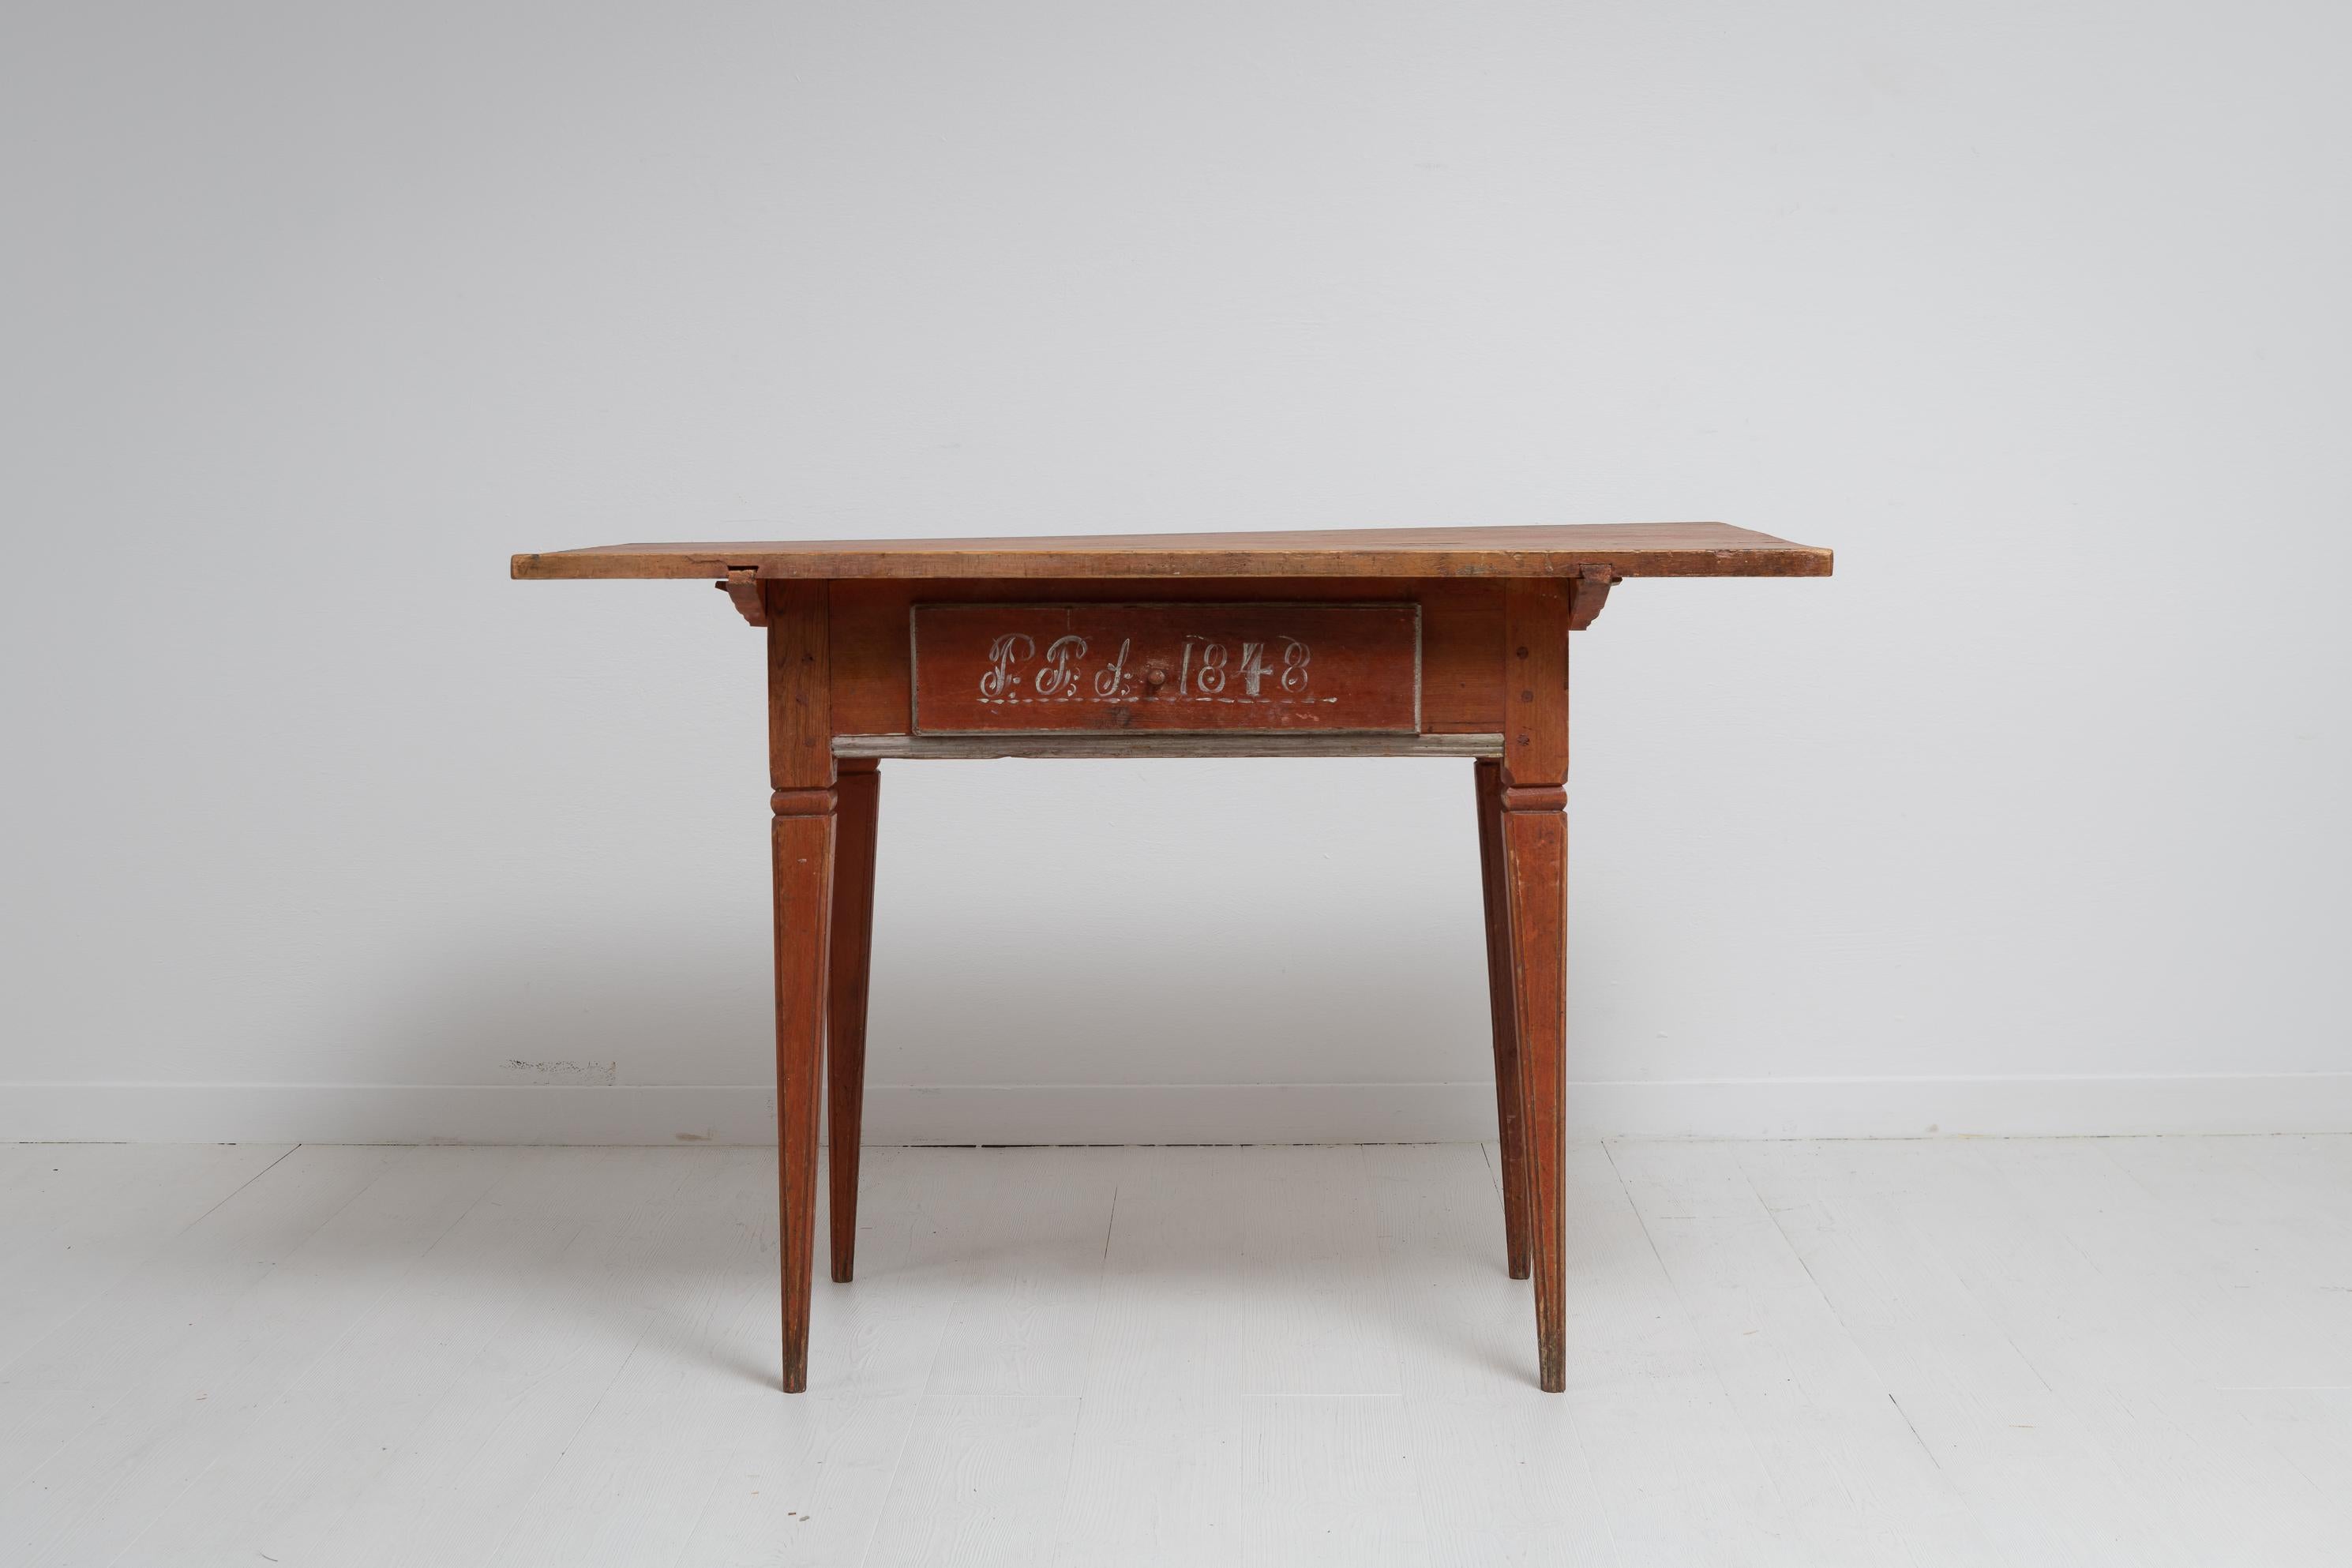 Nordschwedischer Tisch aus Kiefer im gustavianischen Stil. Der Tisch ist ein seltenes Exemplar und hat eine große Schublade in der Mitte und gerade, konische Beine mit Kanneluren. Handgefertigt und in echtem, unberührtem Zustand mit lachsfarbener